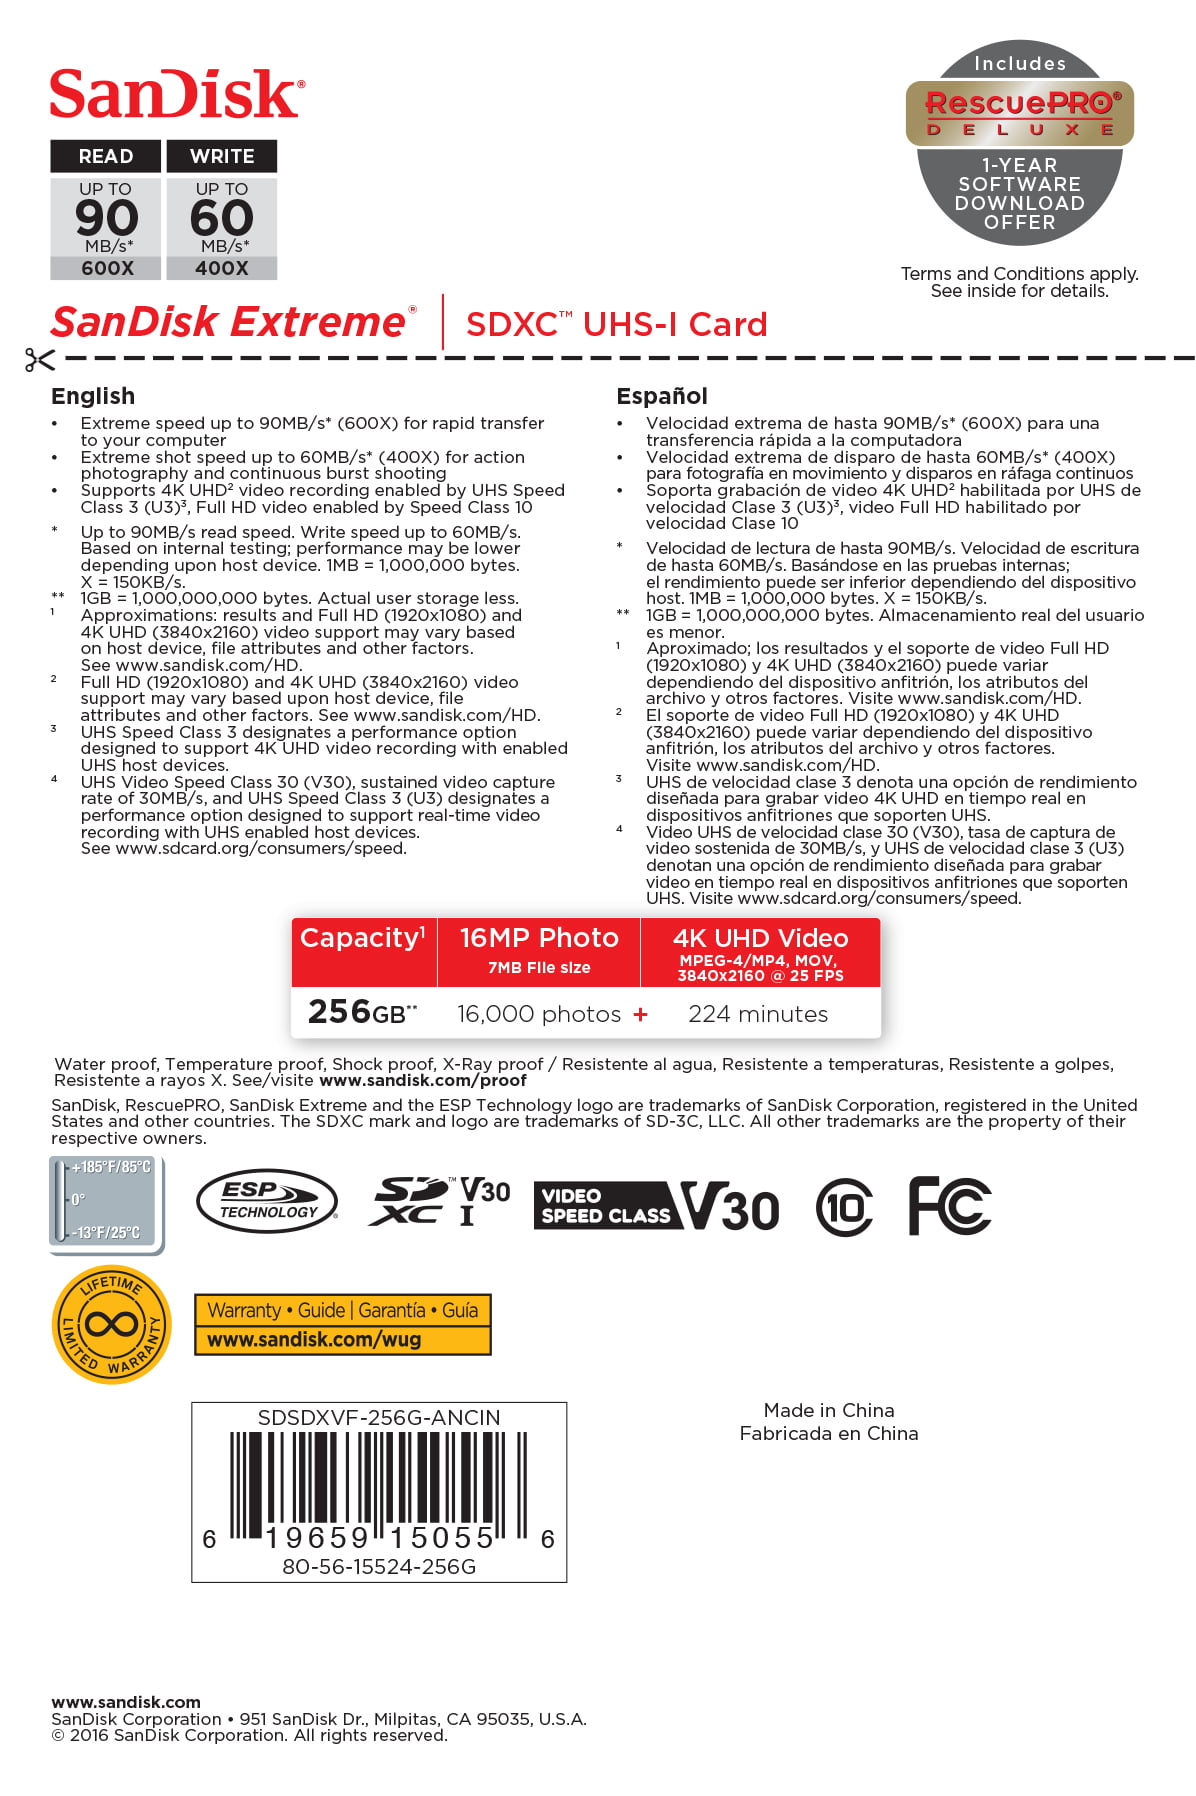 SanDisk 256GB Extreme SDXC UHS-I Card SDSDXV5-256G-GNCIN SD Card C10 V30 4K UHD U3 